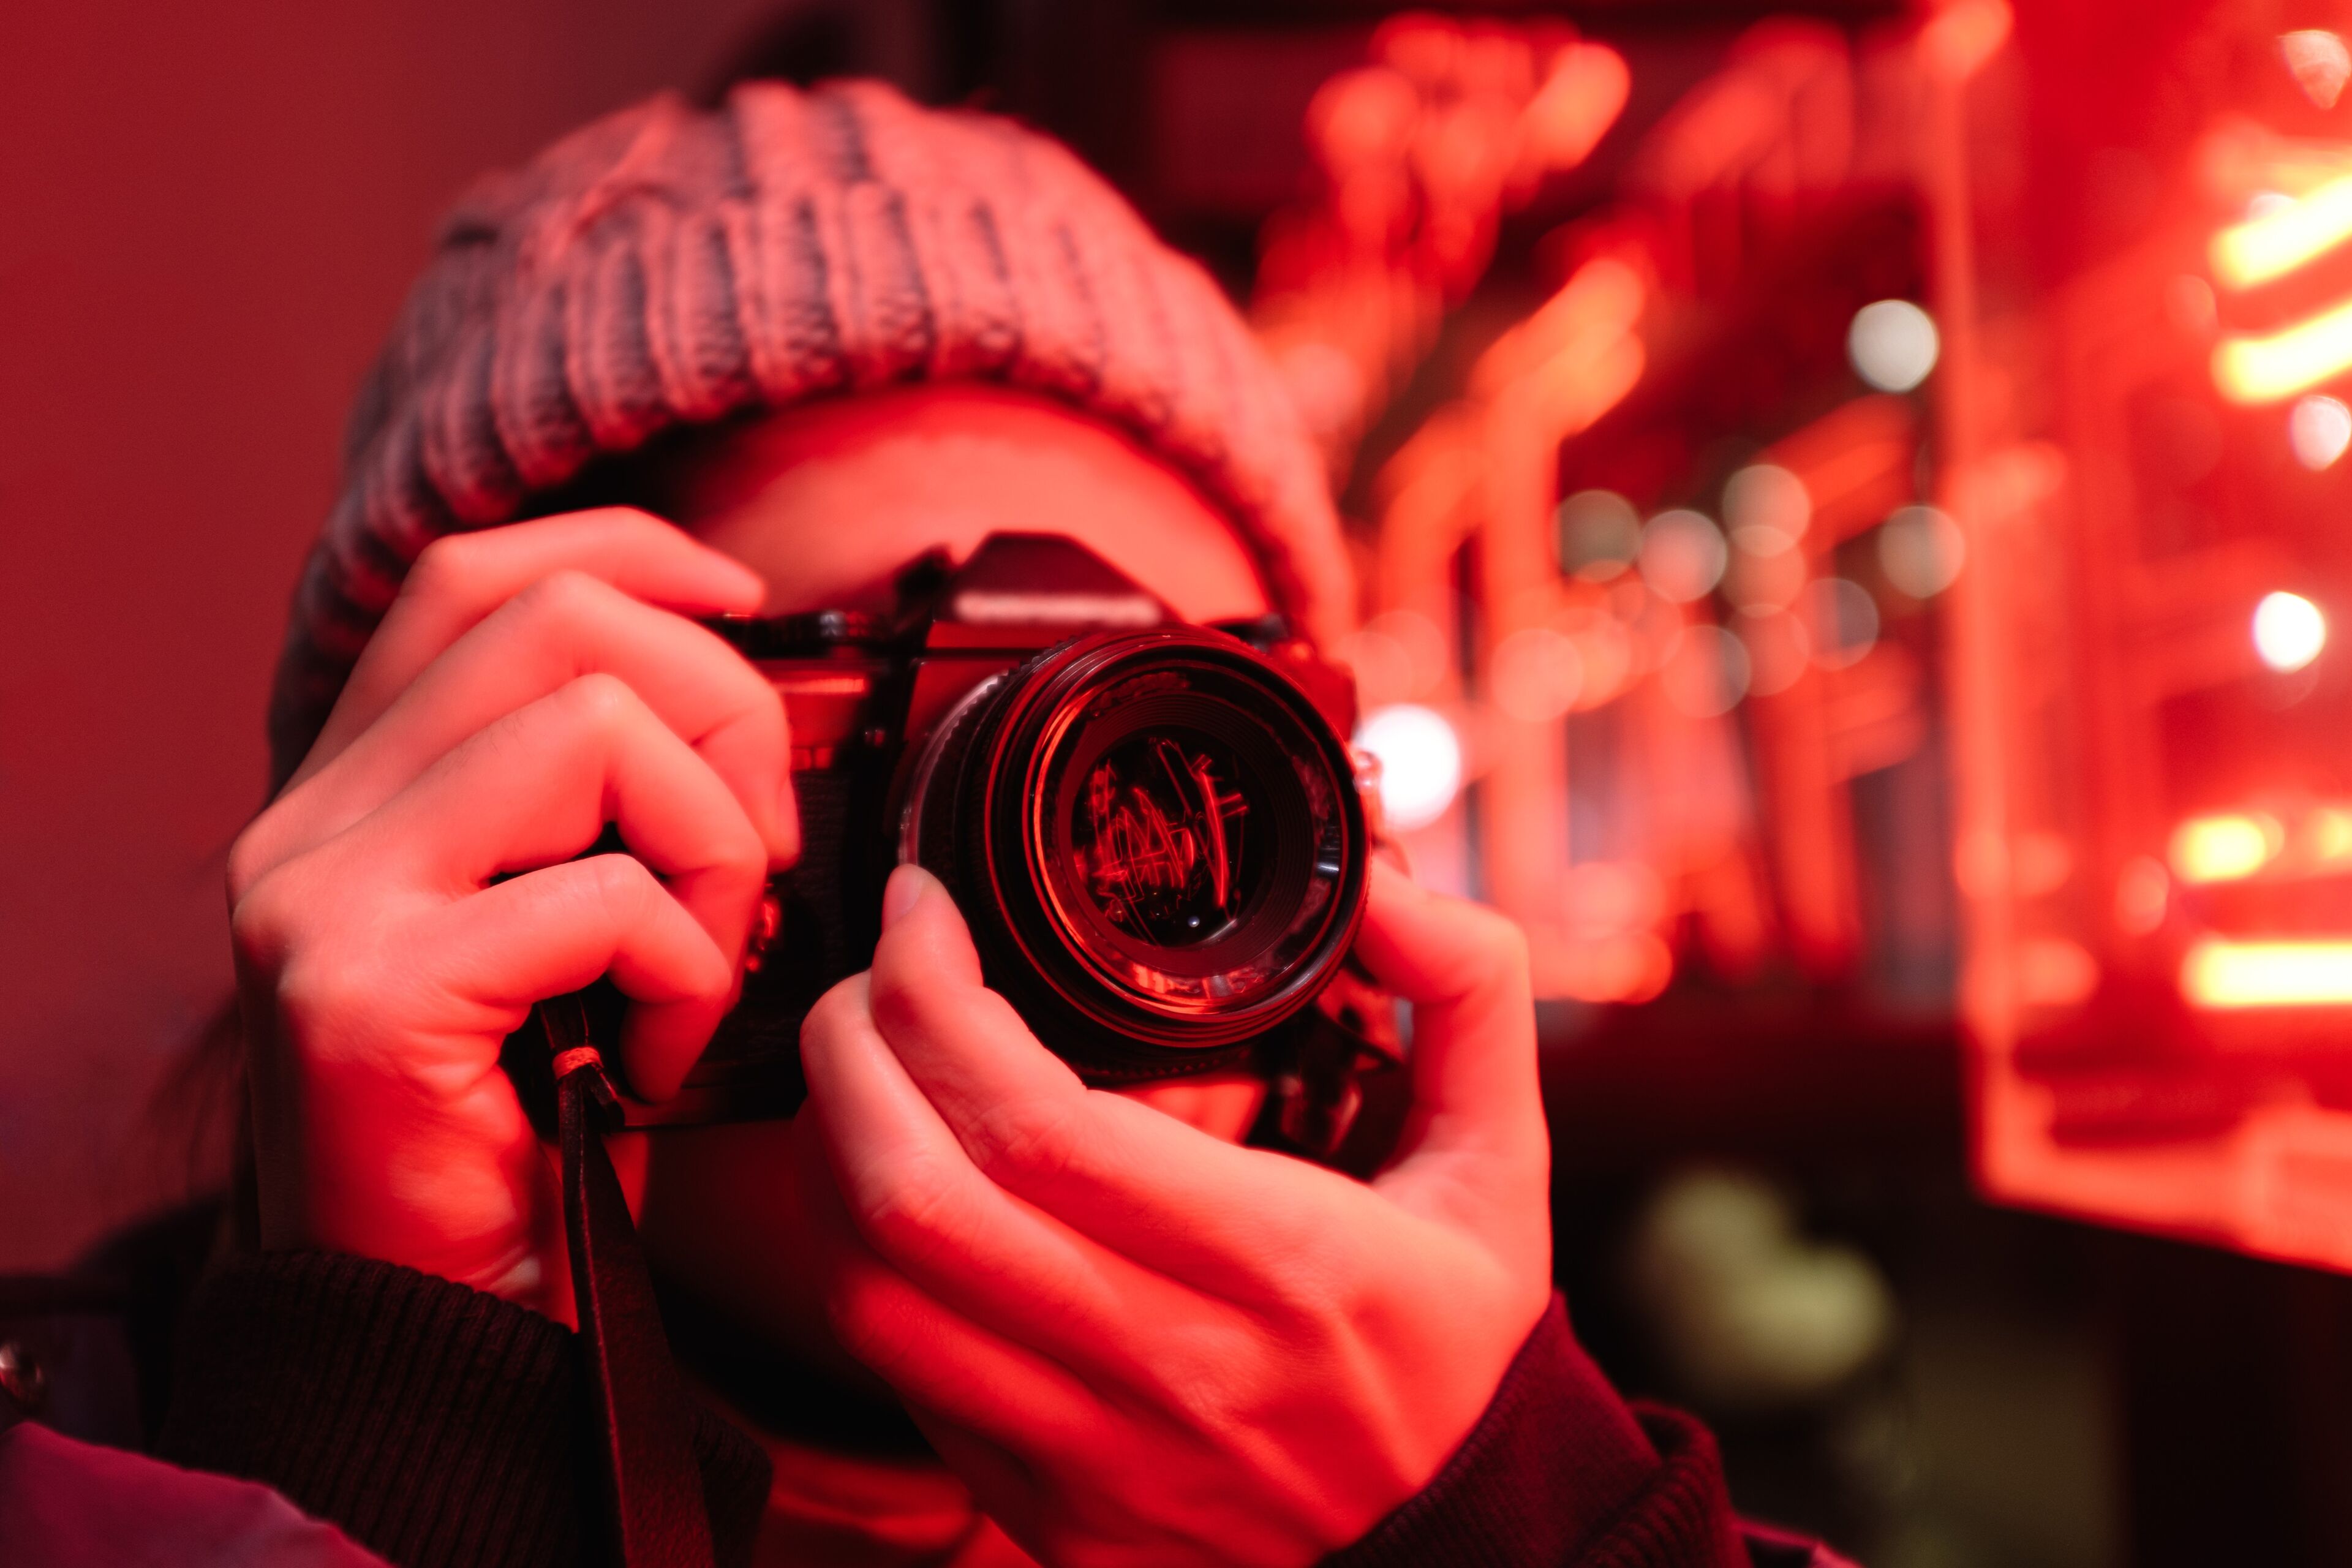 Una persona con un gorro tejido tomando una foto con una cámara réflex digital, iluminada por una intensa luz de neón roja.